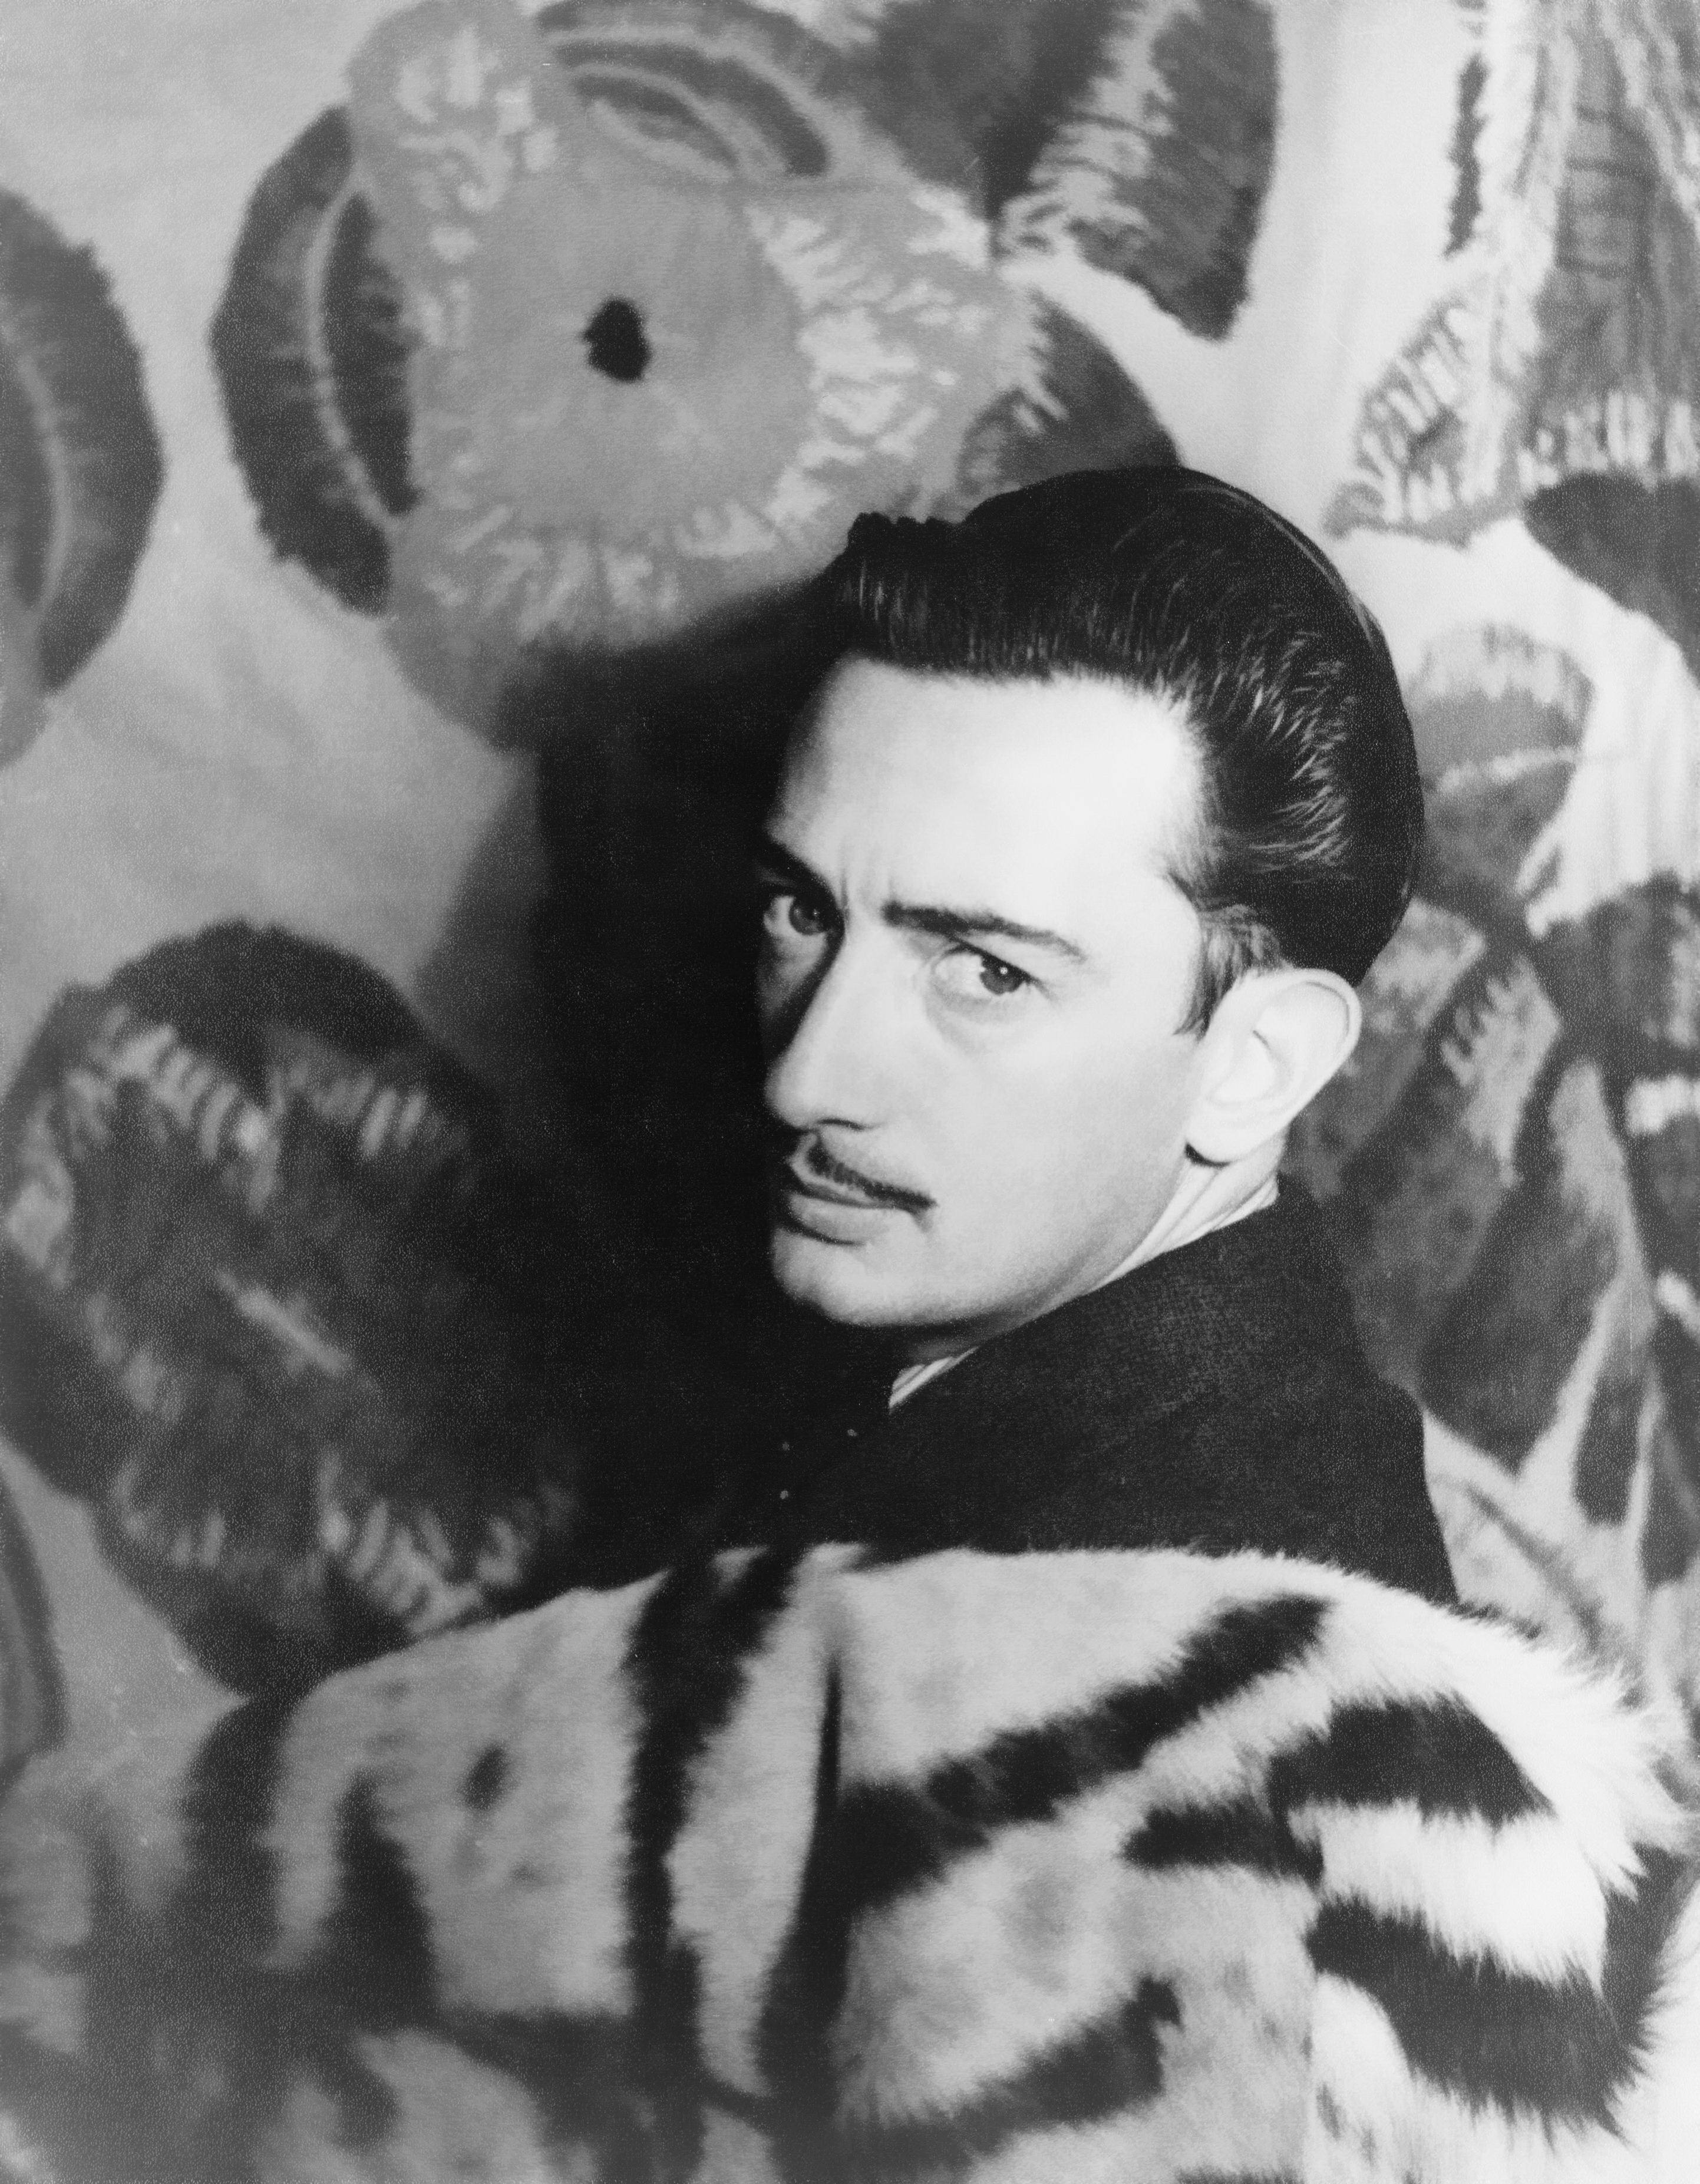 Salvador Dalí - Mayo 11, 1904 - Enero 23, 1989